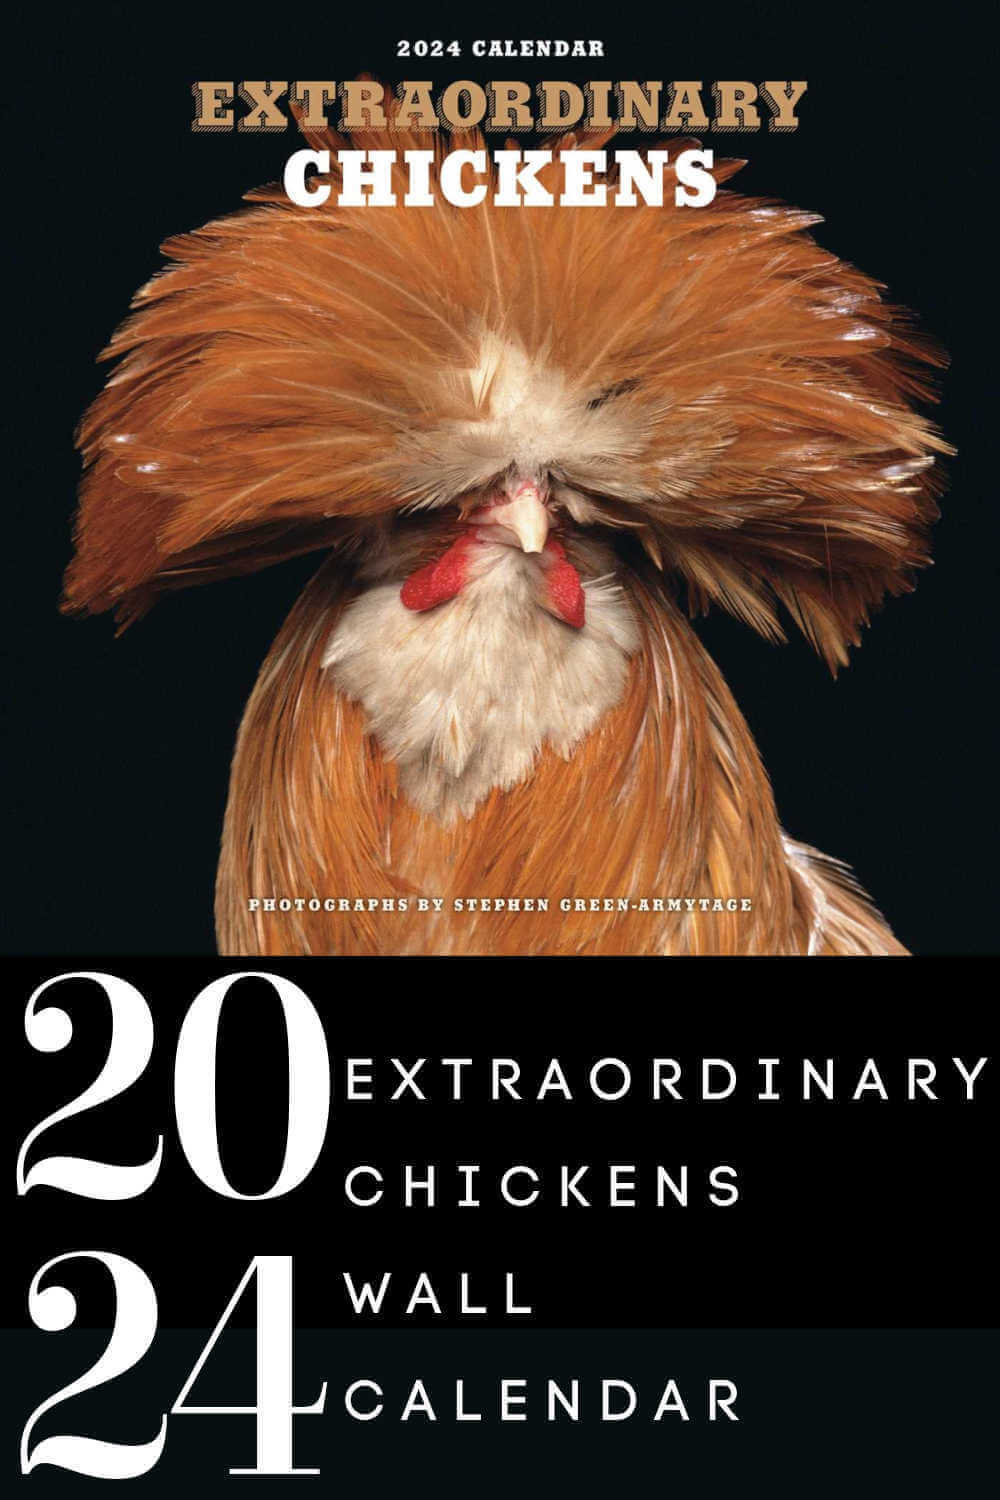 An Extraordinary Chicken Calendar Review